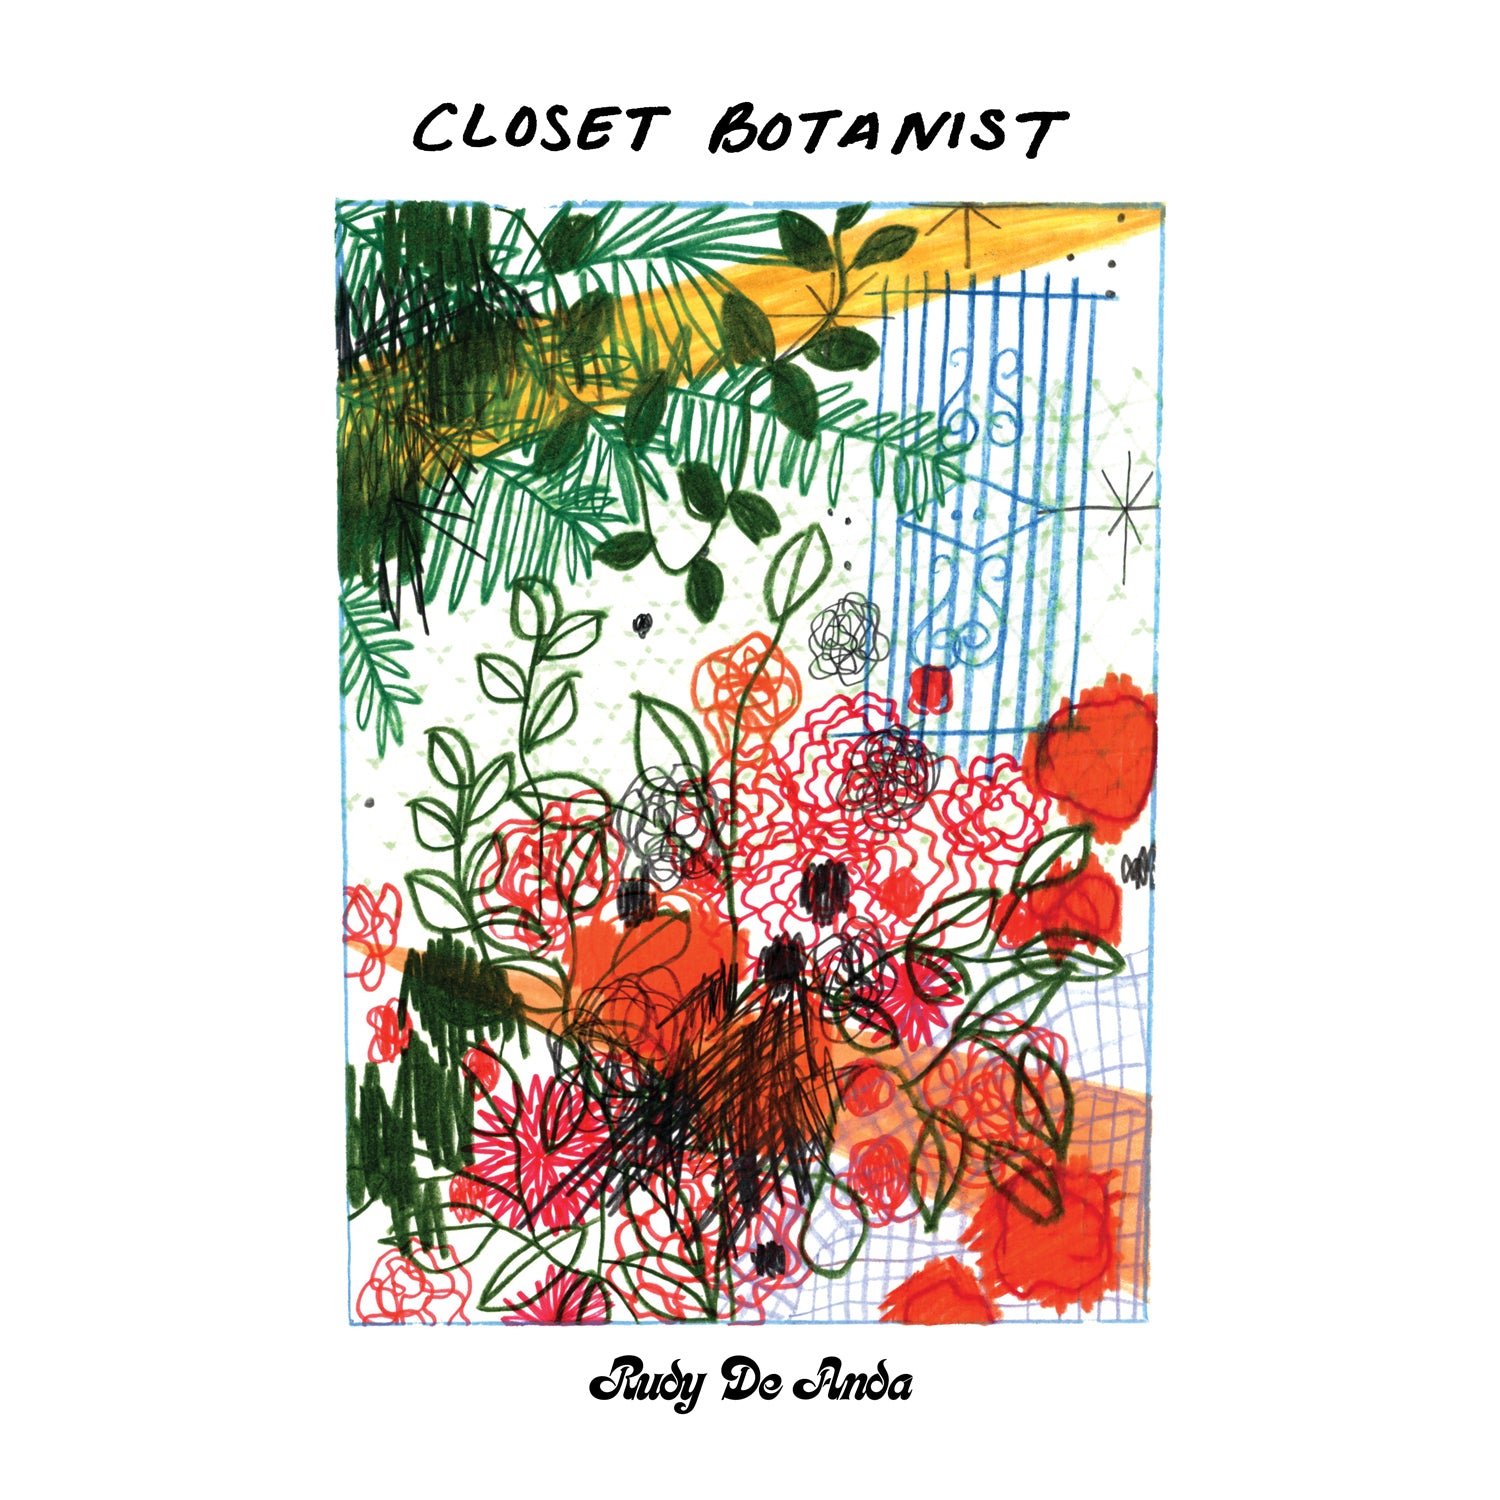 Rudy De Anda - Closet Botanist [Transparent Teal Vinyl]